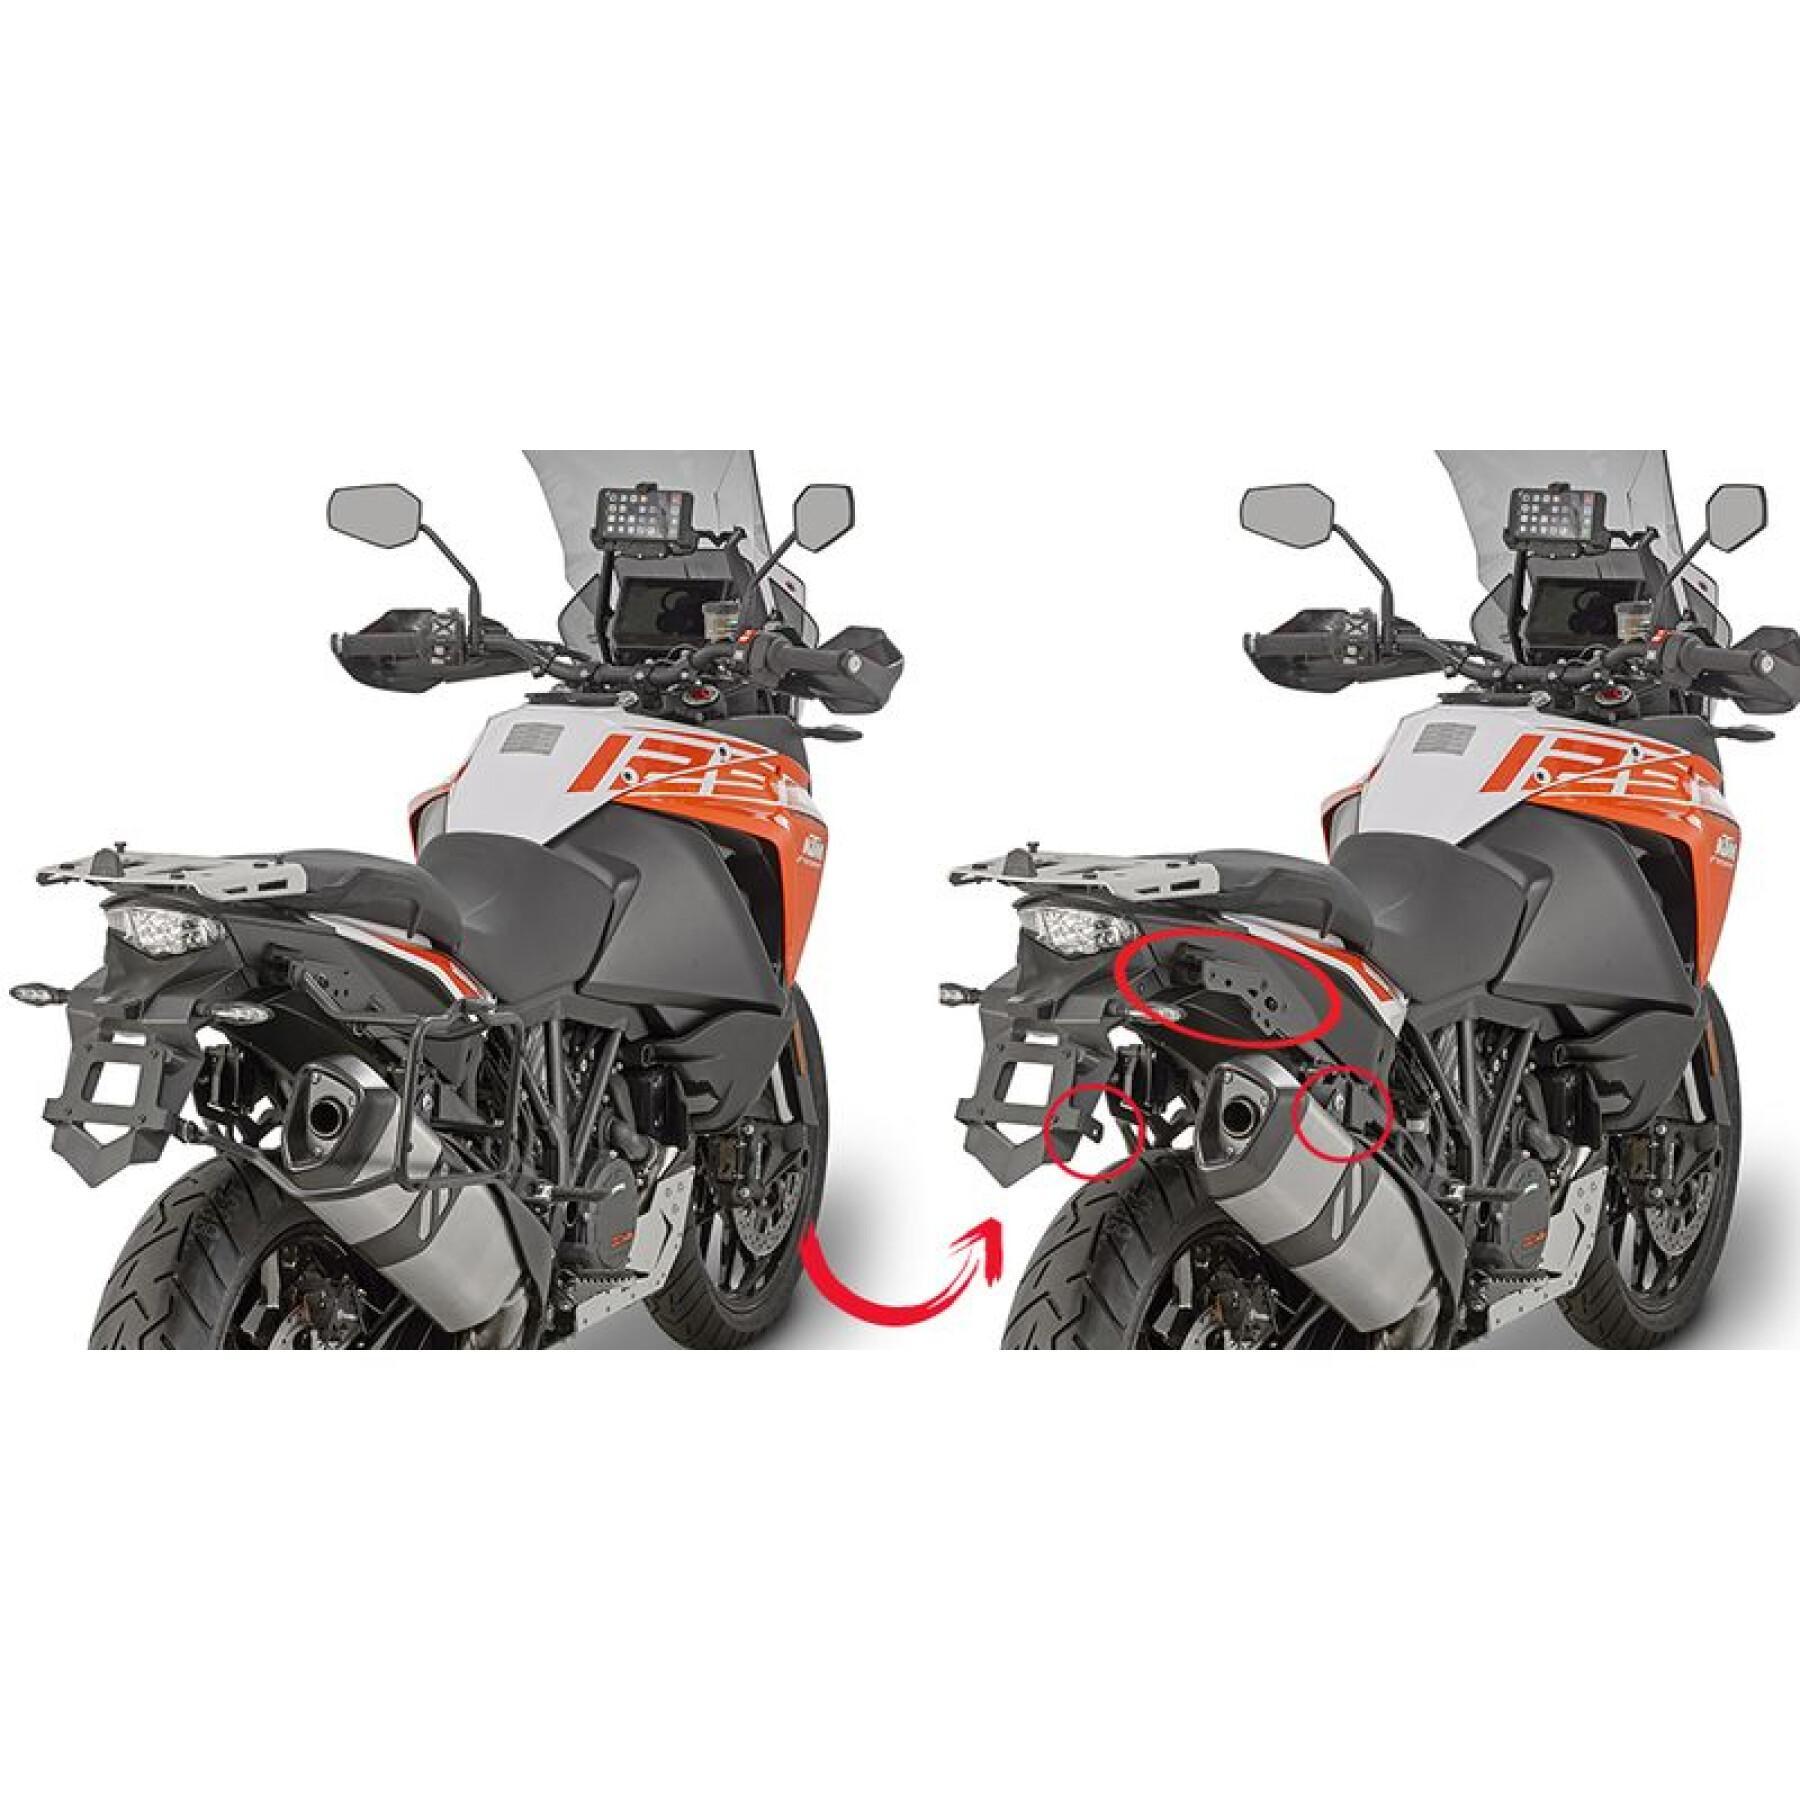 Snabbt stöd för sidofall på motorcykel Givi Monokey Ktm 1050 Adventure (15-16)